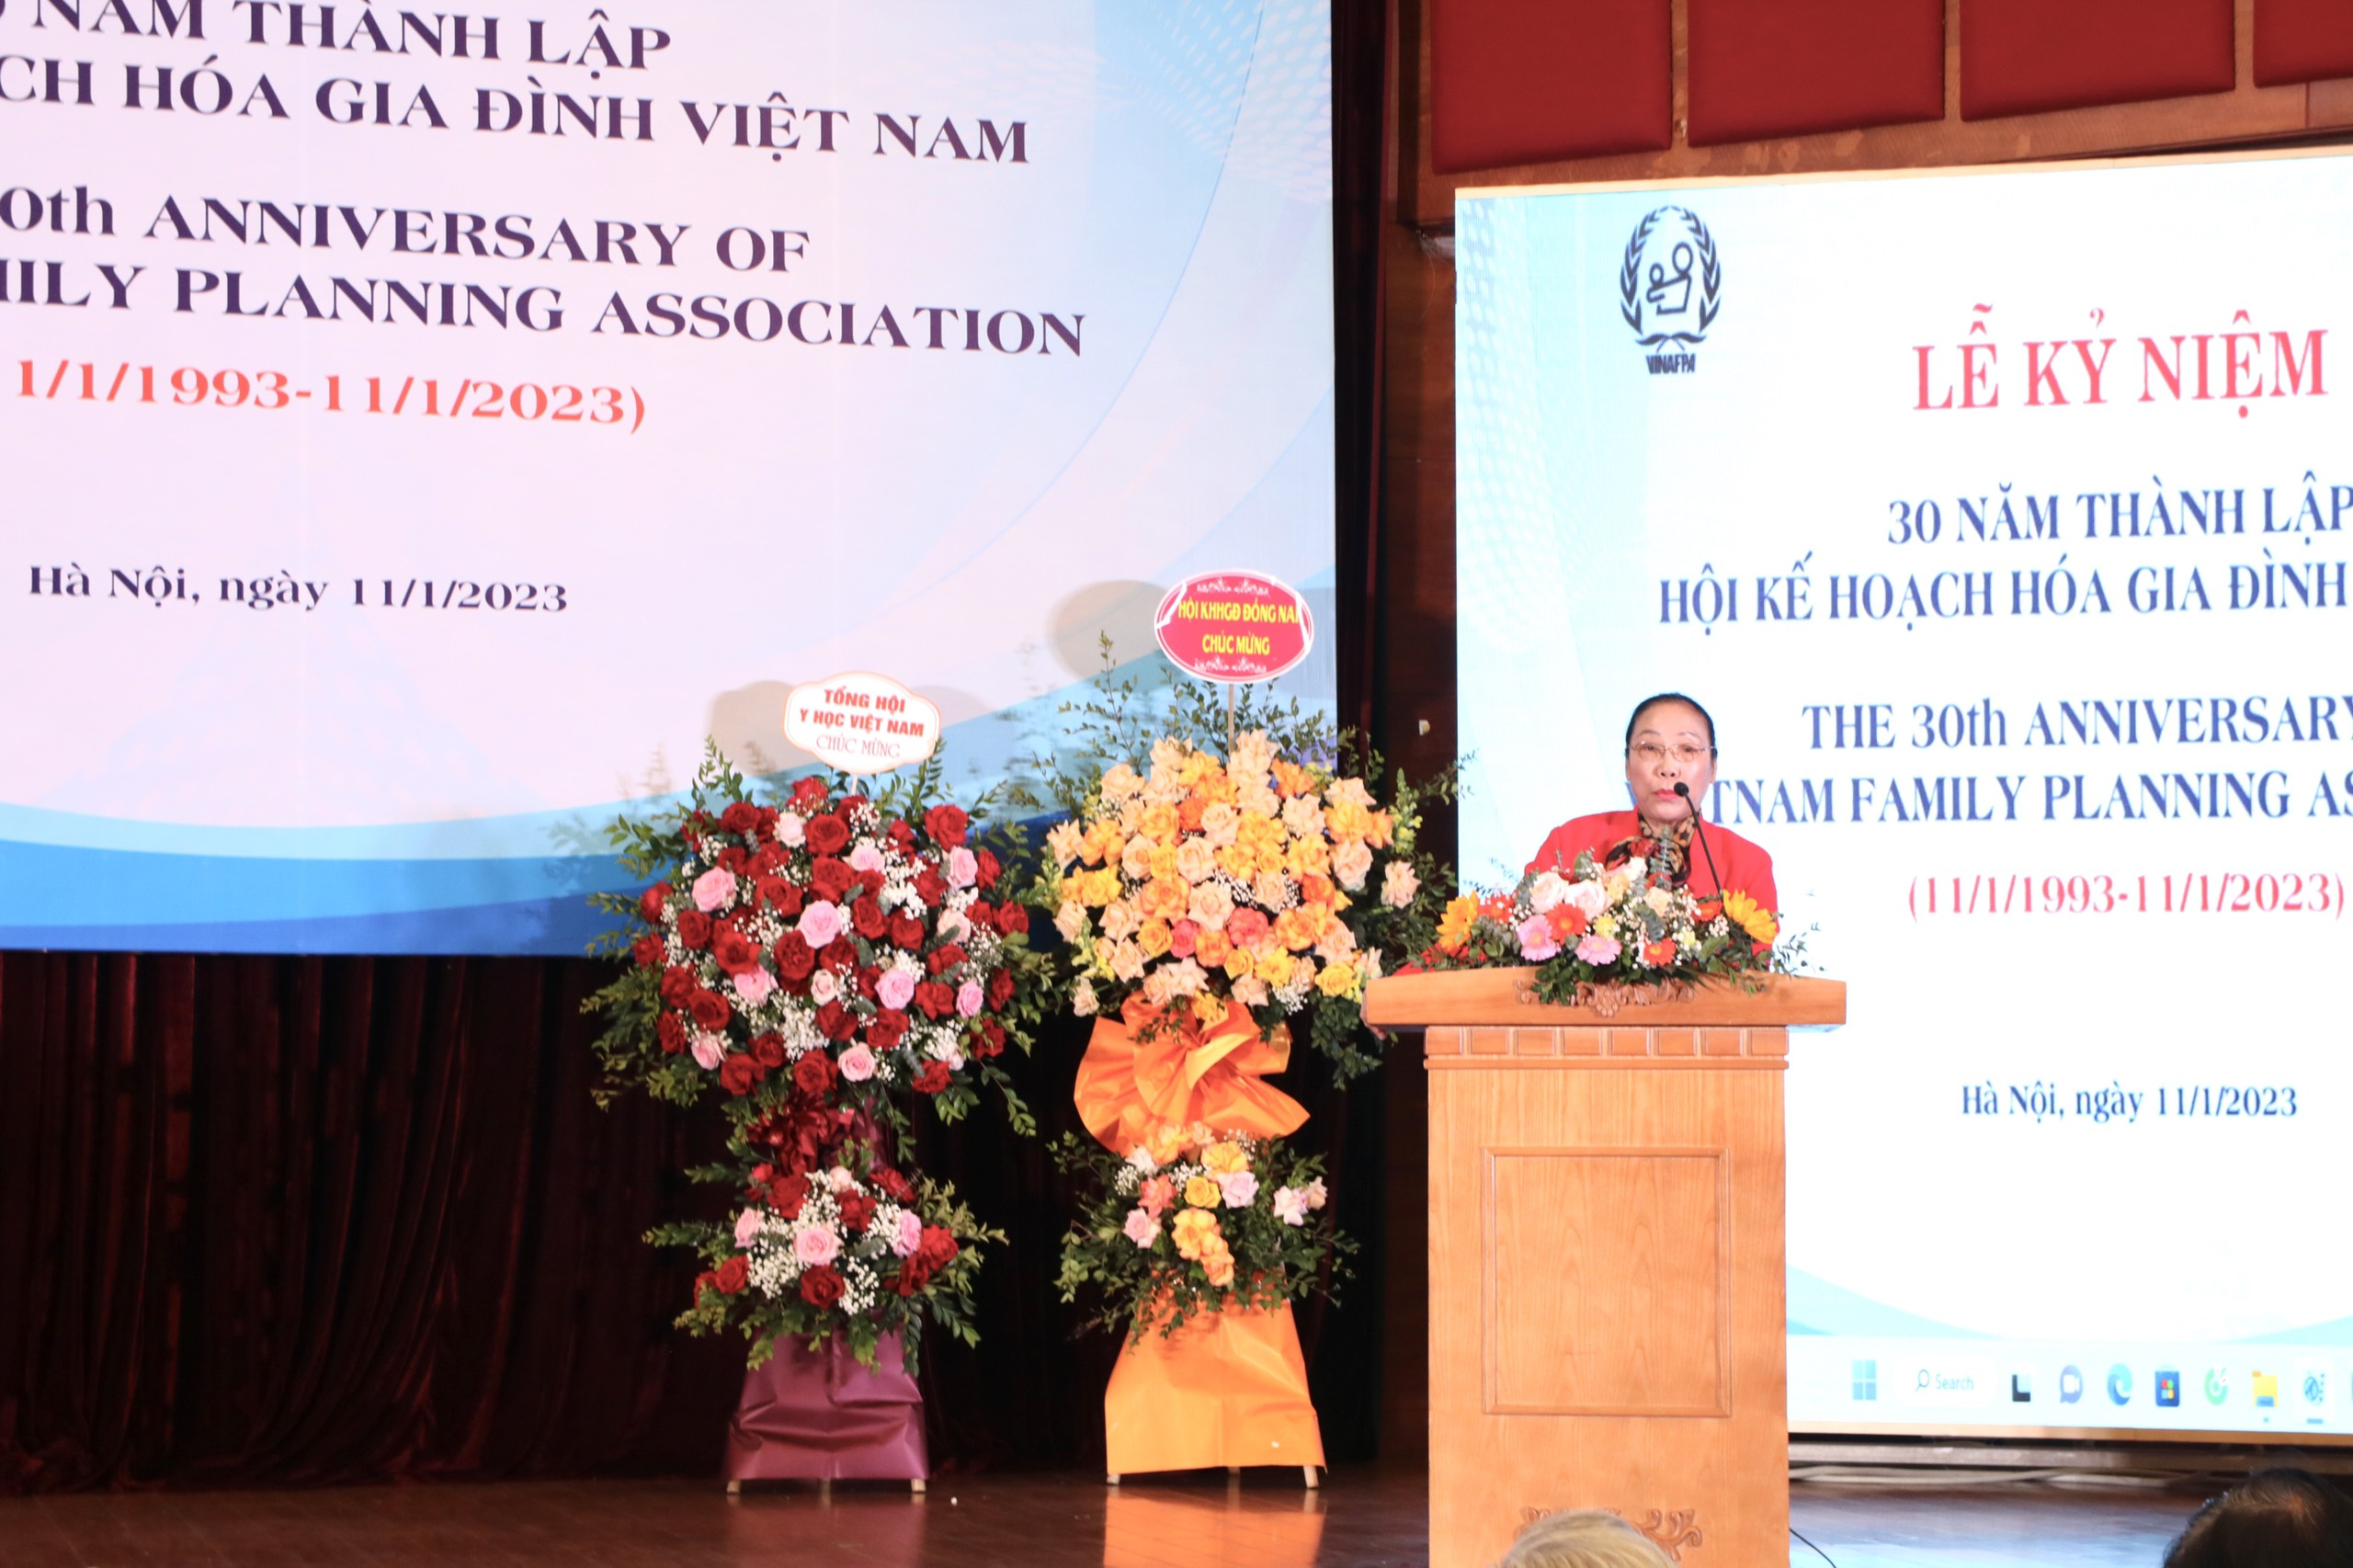 Bác sĩ Vũ Thị Kim Tính - Phó Chủ tịch Hội KHHGĐ Việt Nam, Chủ tịch Hội KHHGĐ tỉnh Bình Dương 